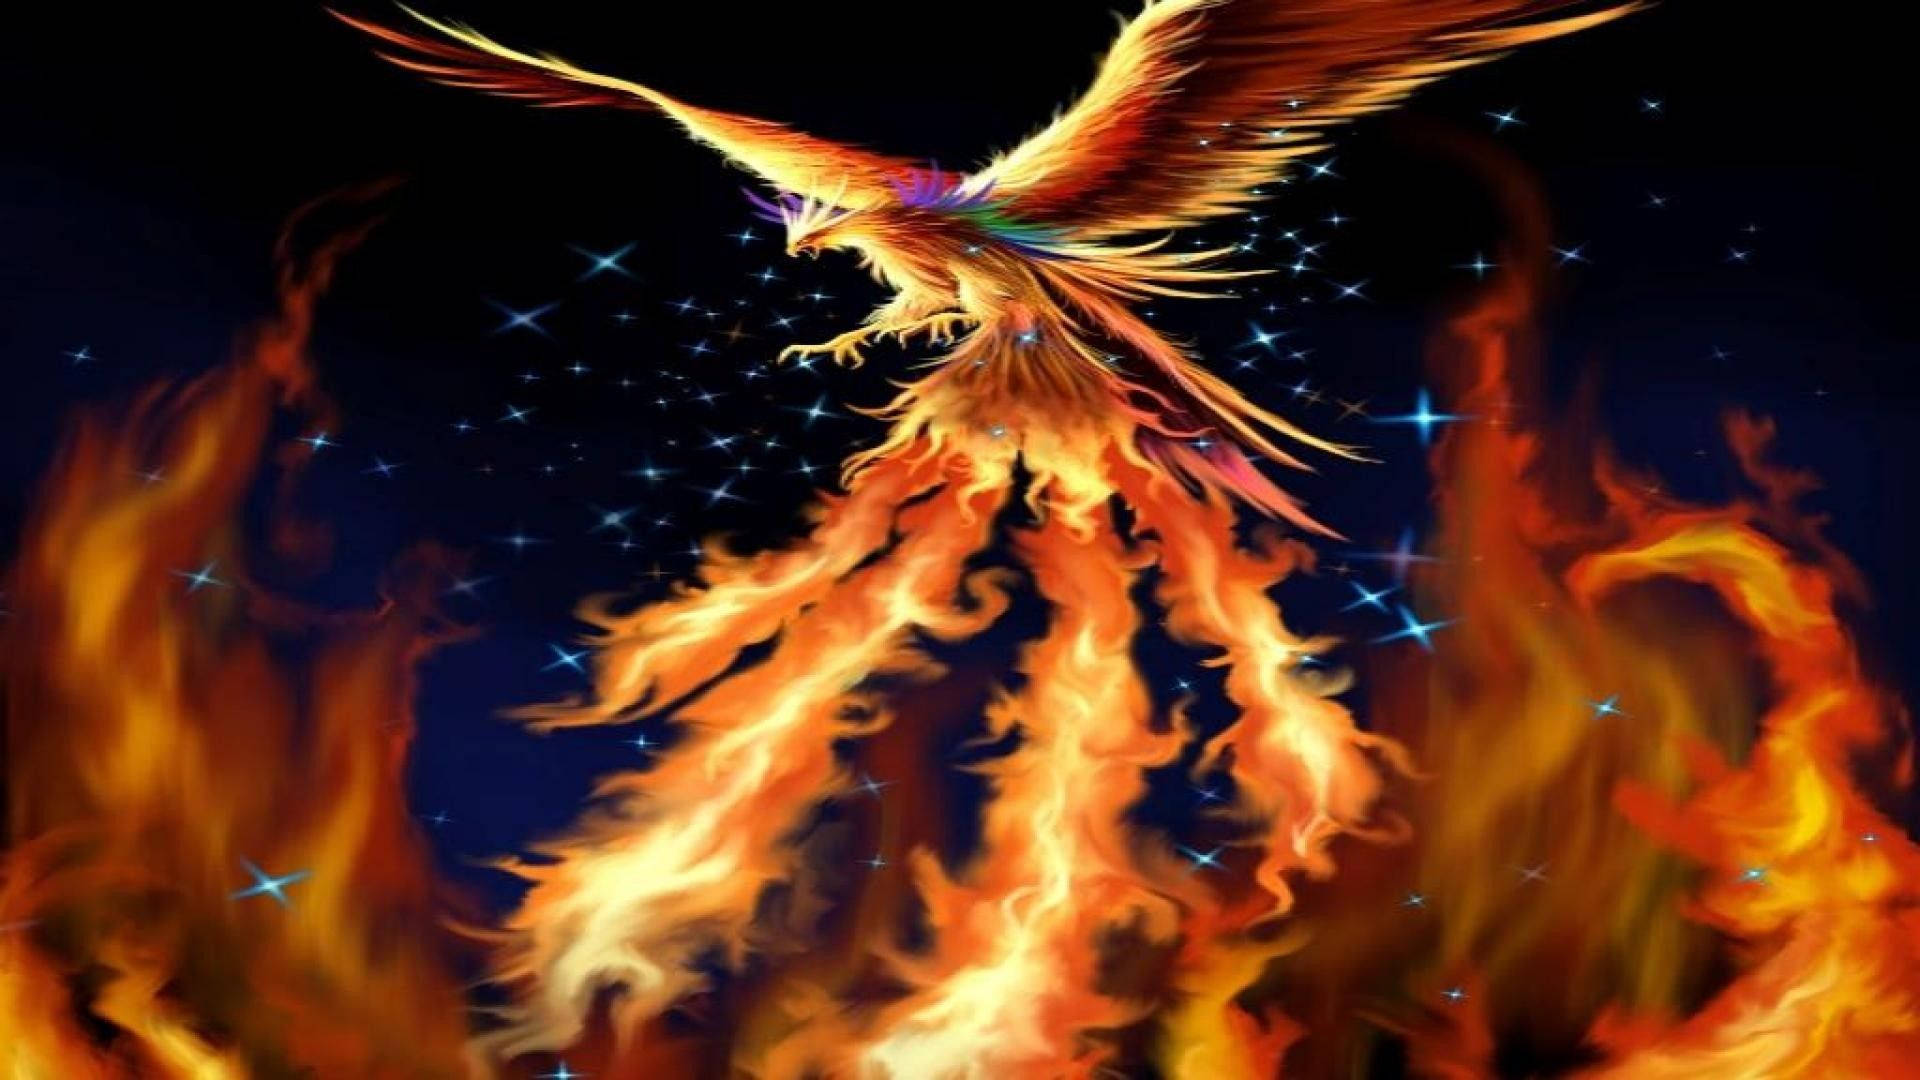 Flying Phoenix On Fire